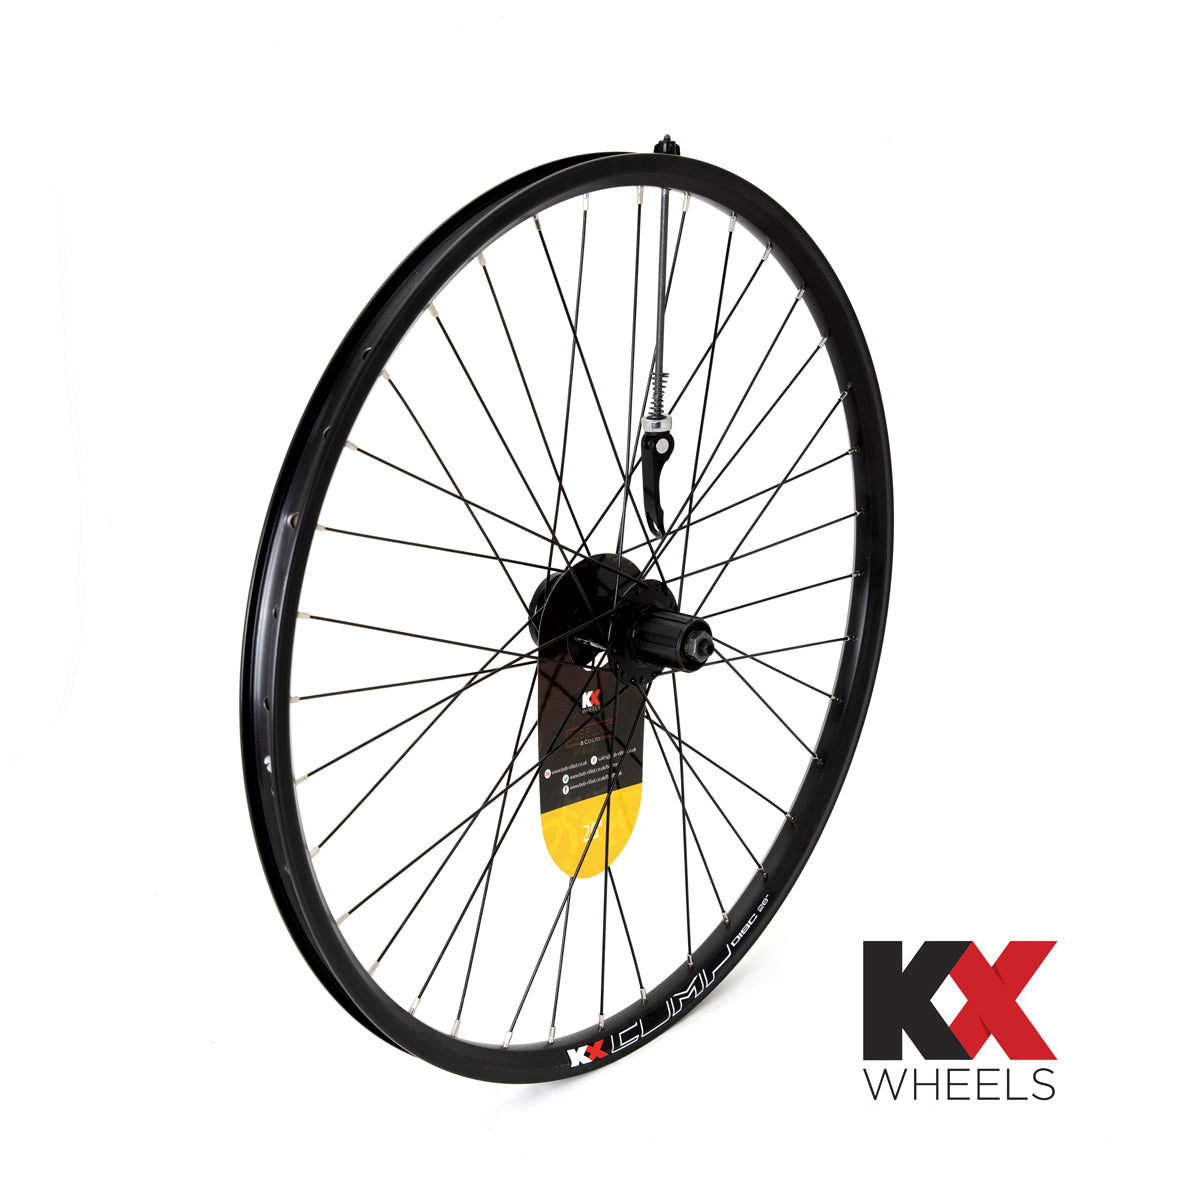 KX Wheels Double Wall QR Disc Cassette 26 Inch Rear Bike Wheel Black